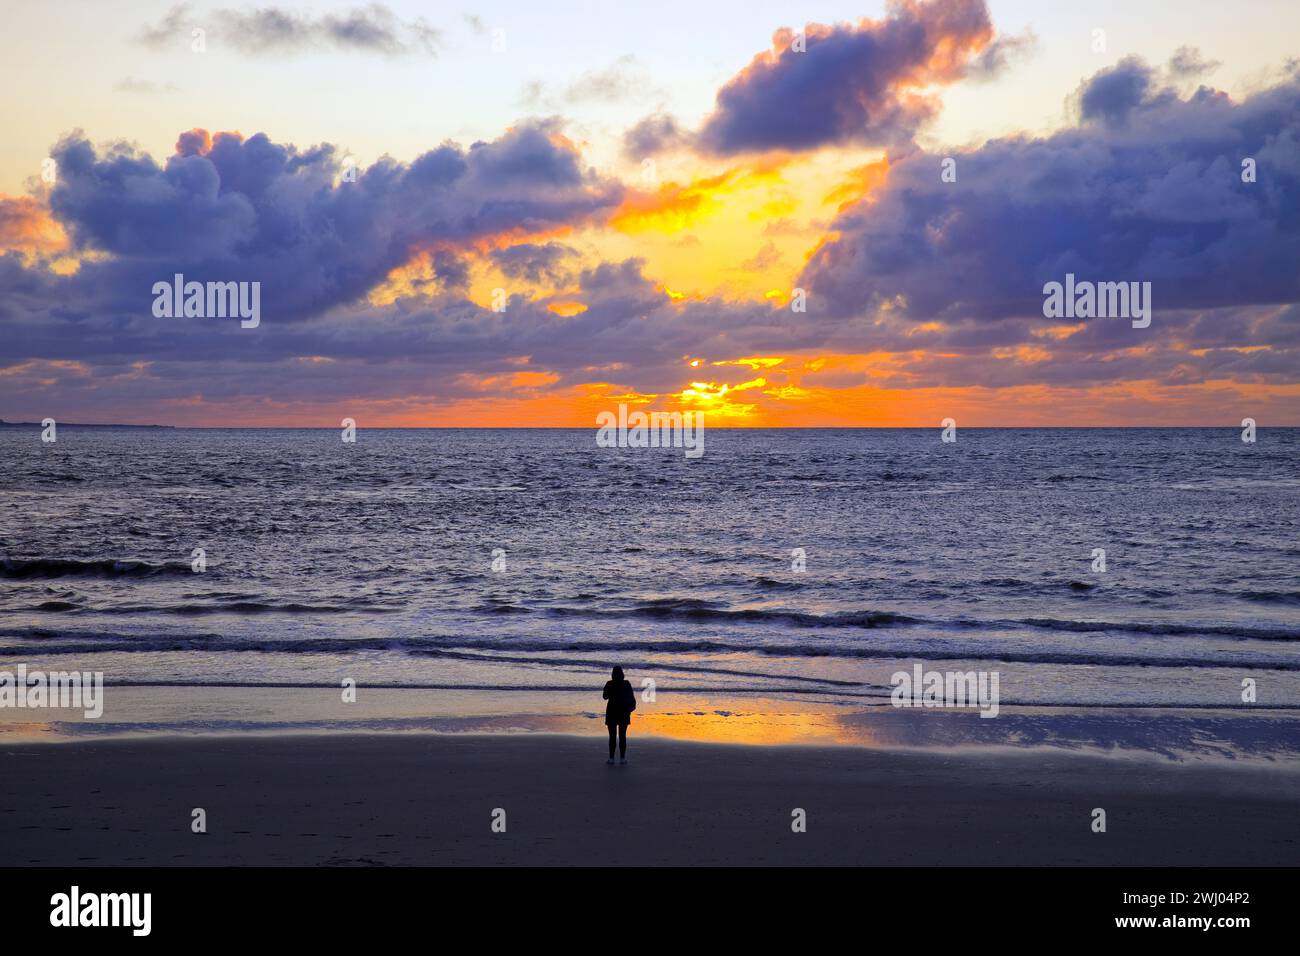 Paysage vase avec des nuages colorés au coucher du soleil, Norderney Island, mer du Nord, Allemagne, Europe Banque D'Images